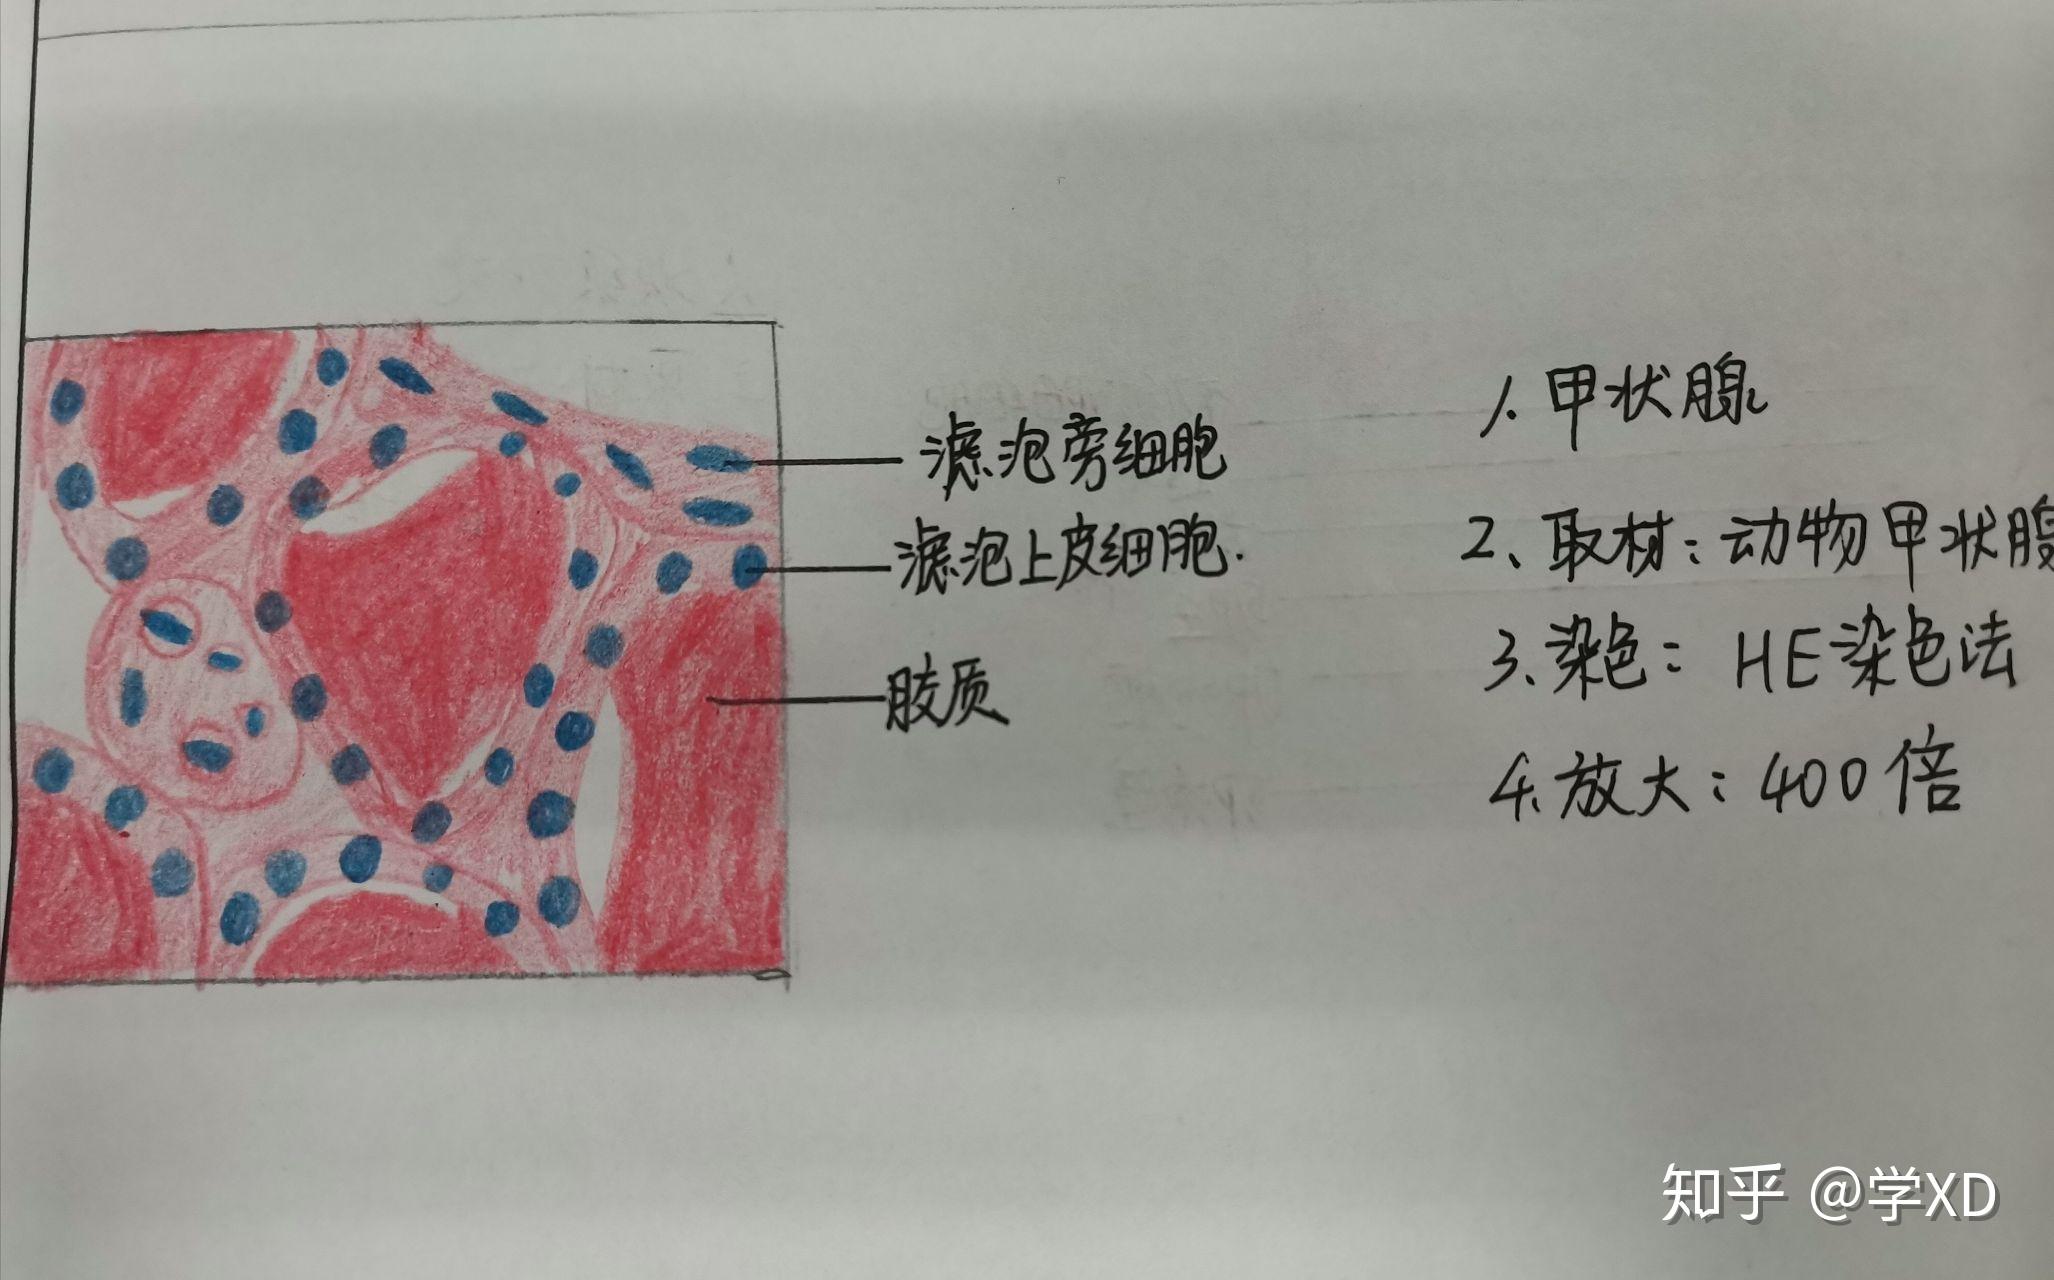 组胚实验红蓝铅笔绘图 